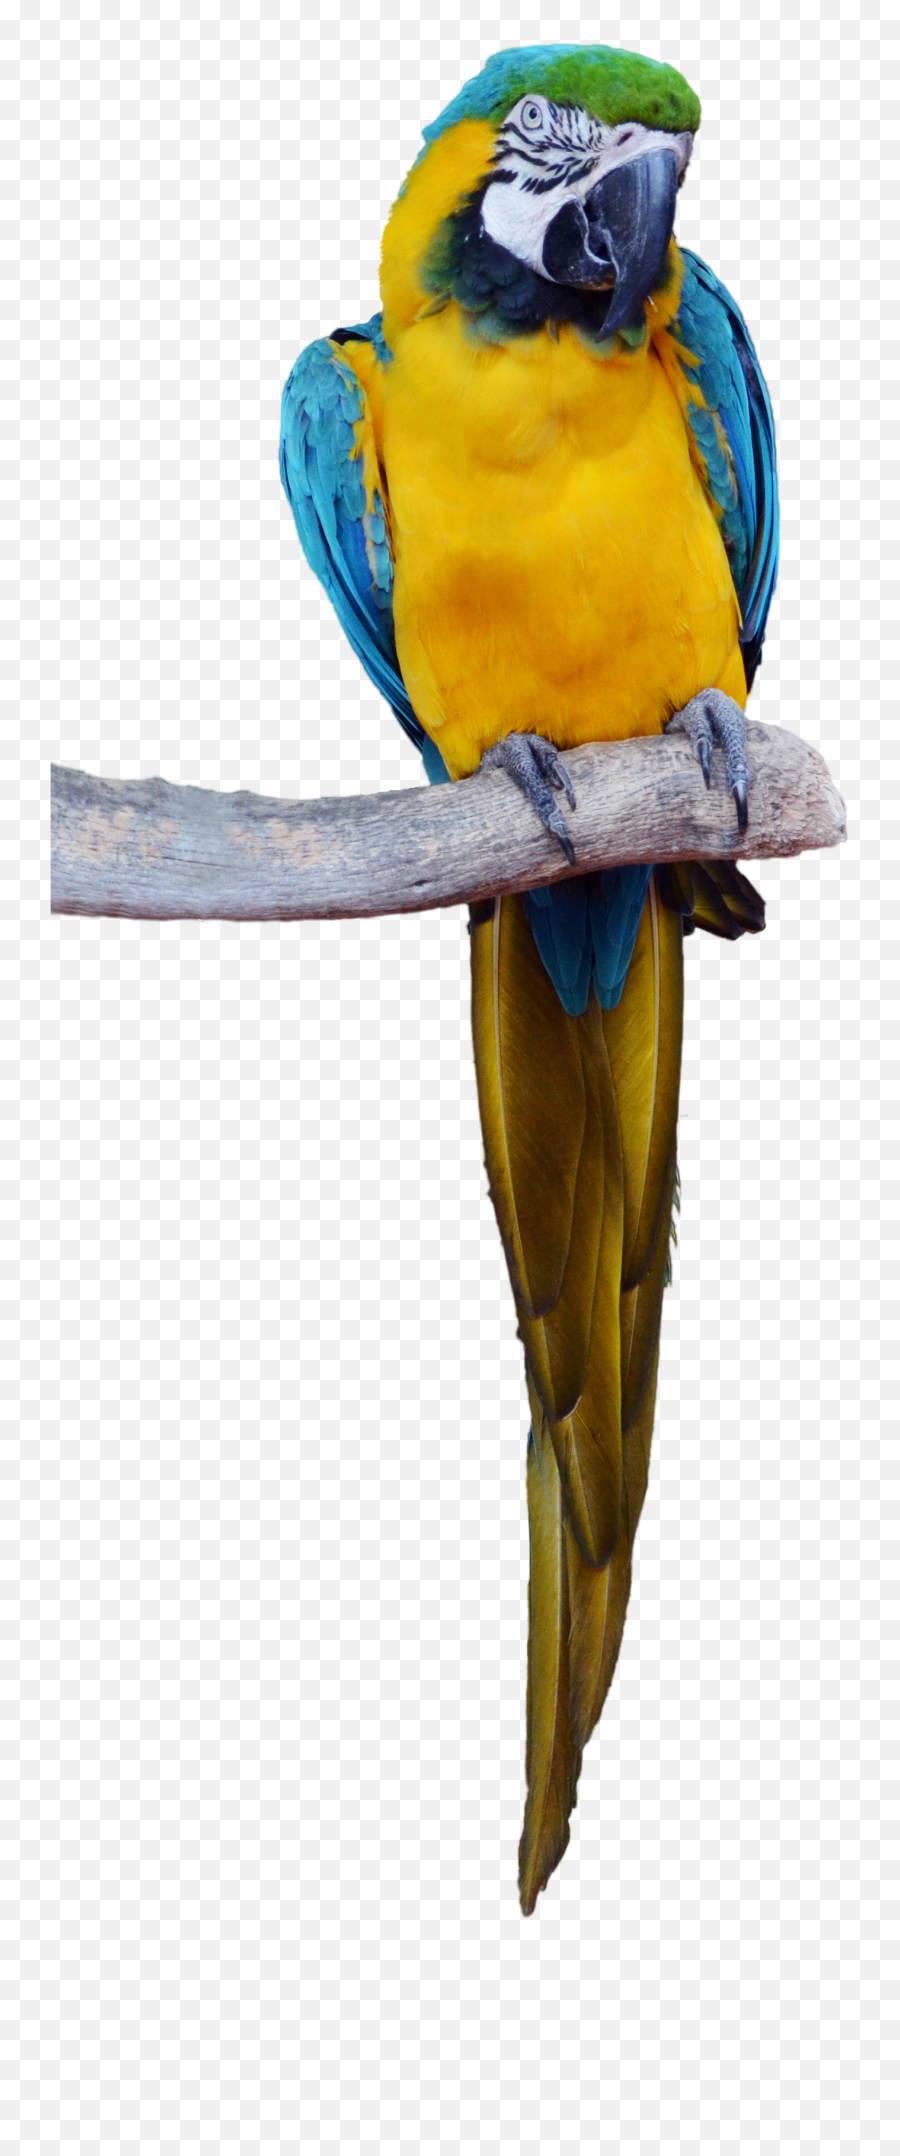 Download - Parrotpngtransparentimagestransparent Tropical Bird Png Transparent,Parakeet Png